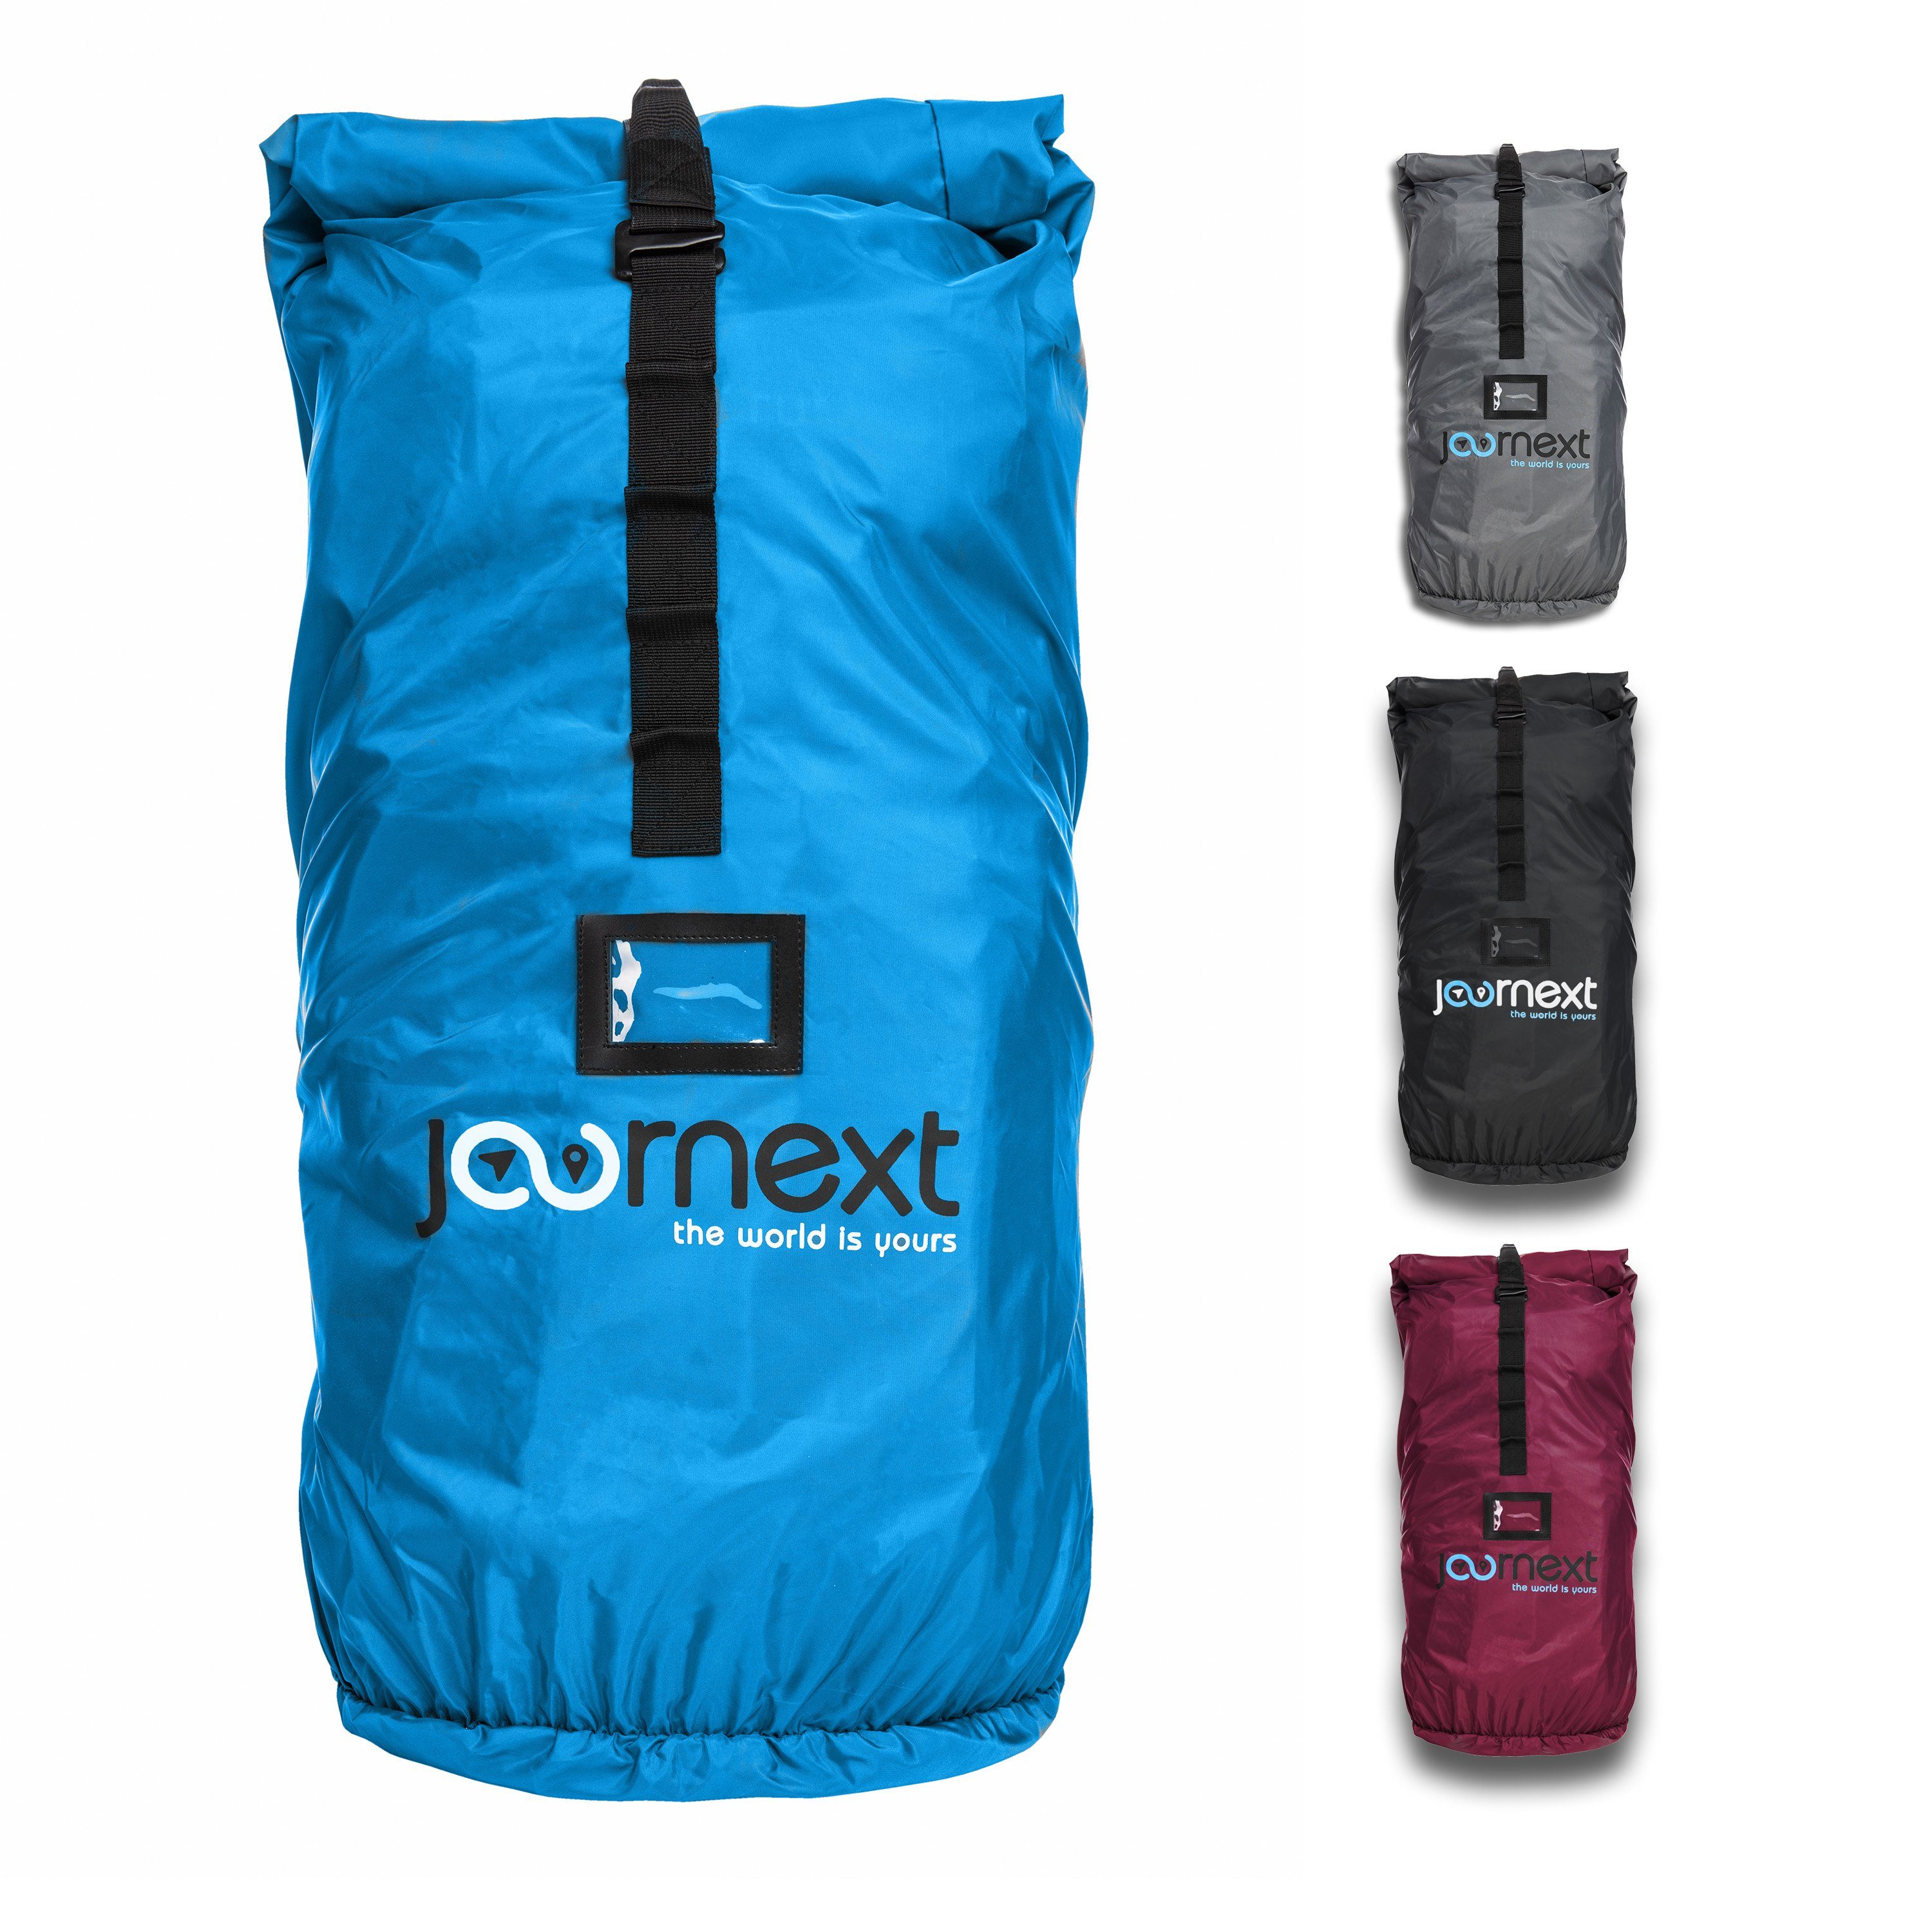 JOURNEXT Rucksack-Regenschutz Backpack Cover 2.0